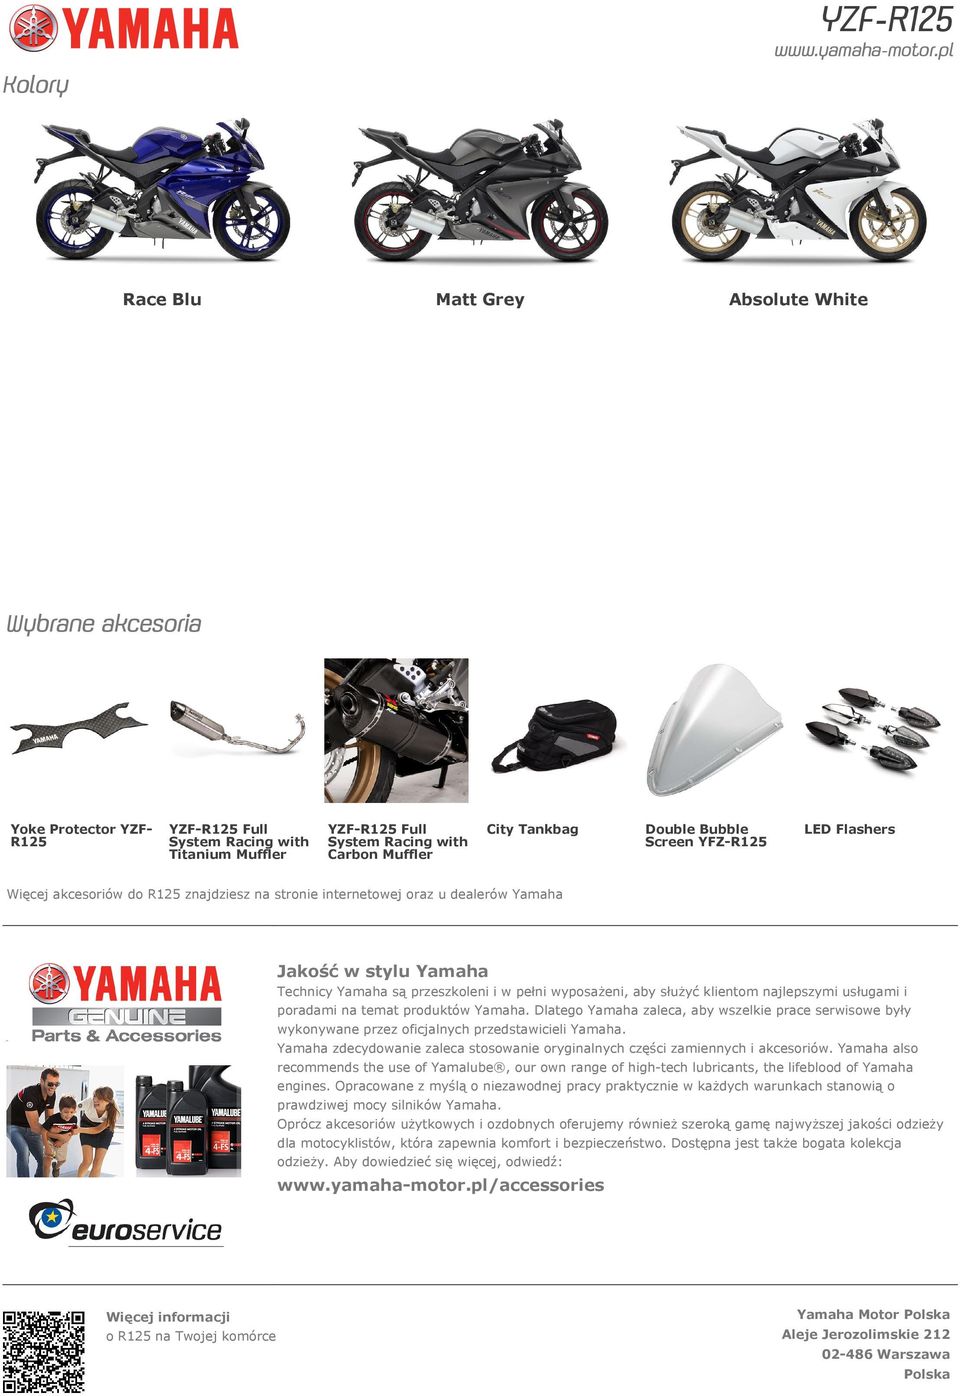 wyposażeni, aby służyć klientom najlepszymi usługami i poradami na temat produktów Yamaha. Dlatego Yamaha zaleca, aby wszelkie prace serwisowe były wykonywane przez oficjalnych przedstawicieli Yamaha.